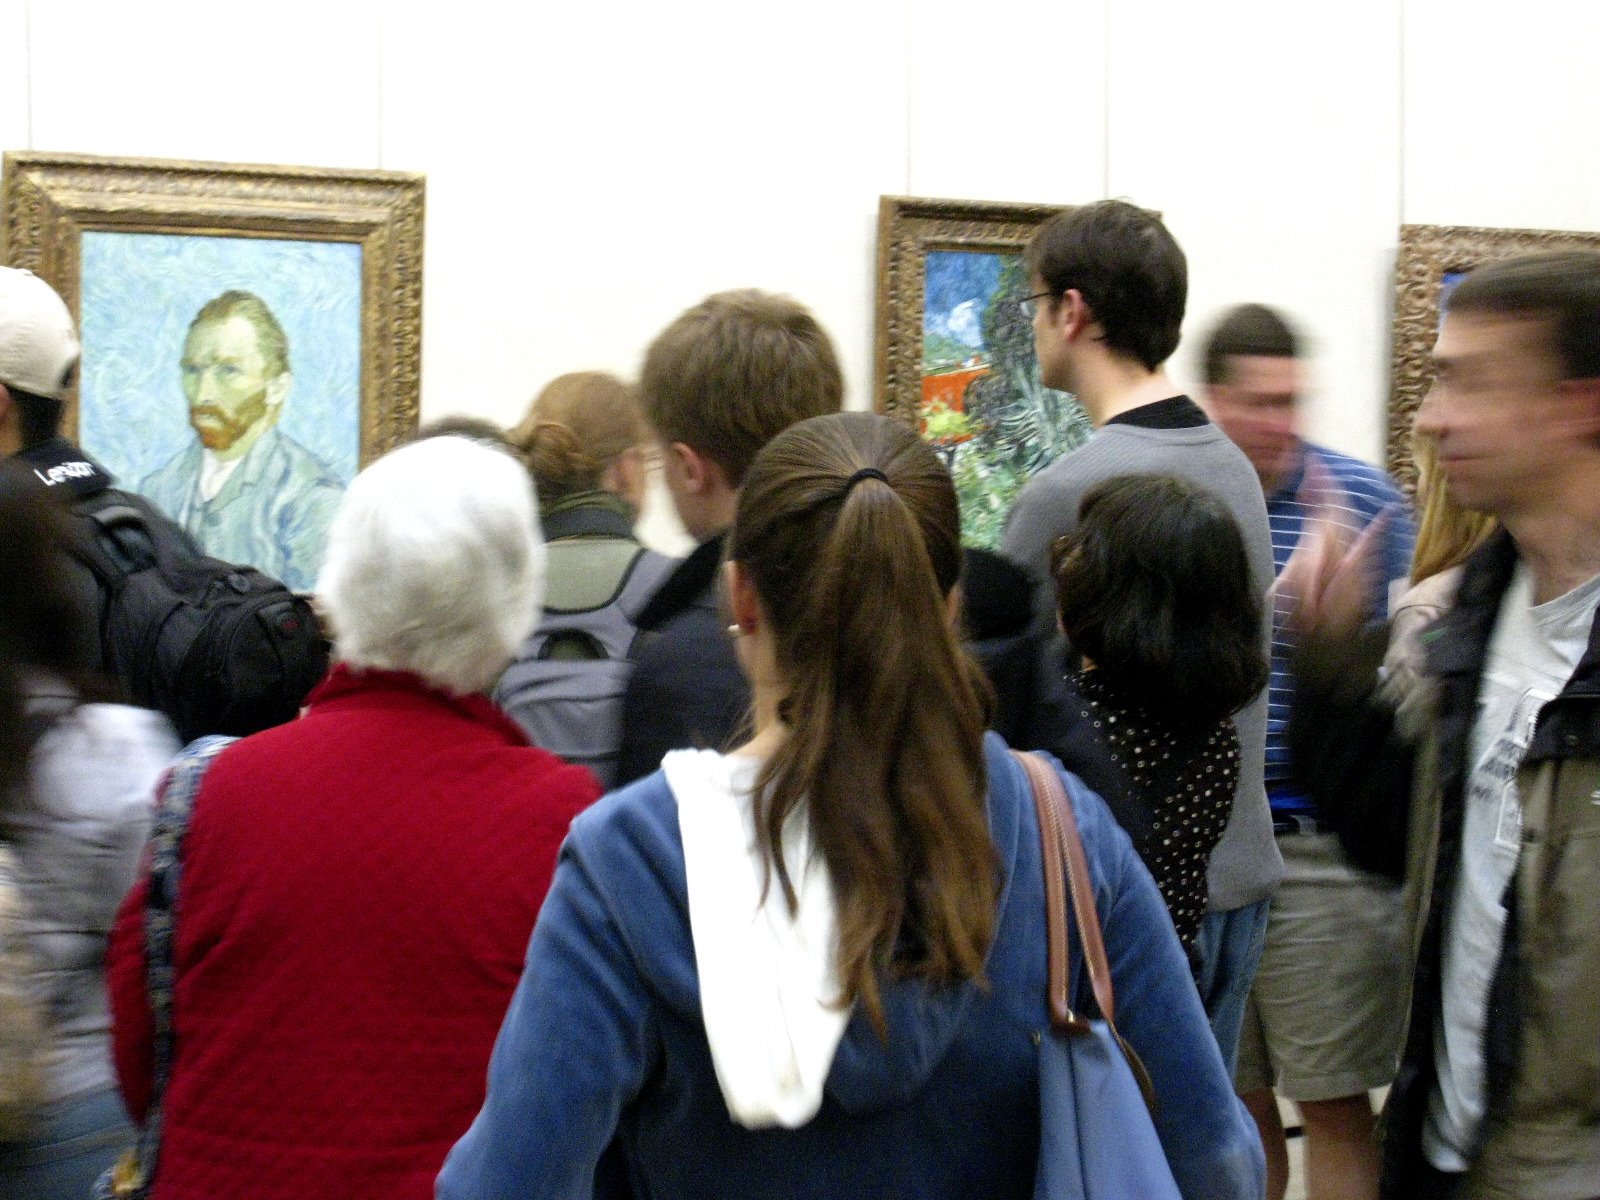 [Van+Gogh+crowd.JPG]